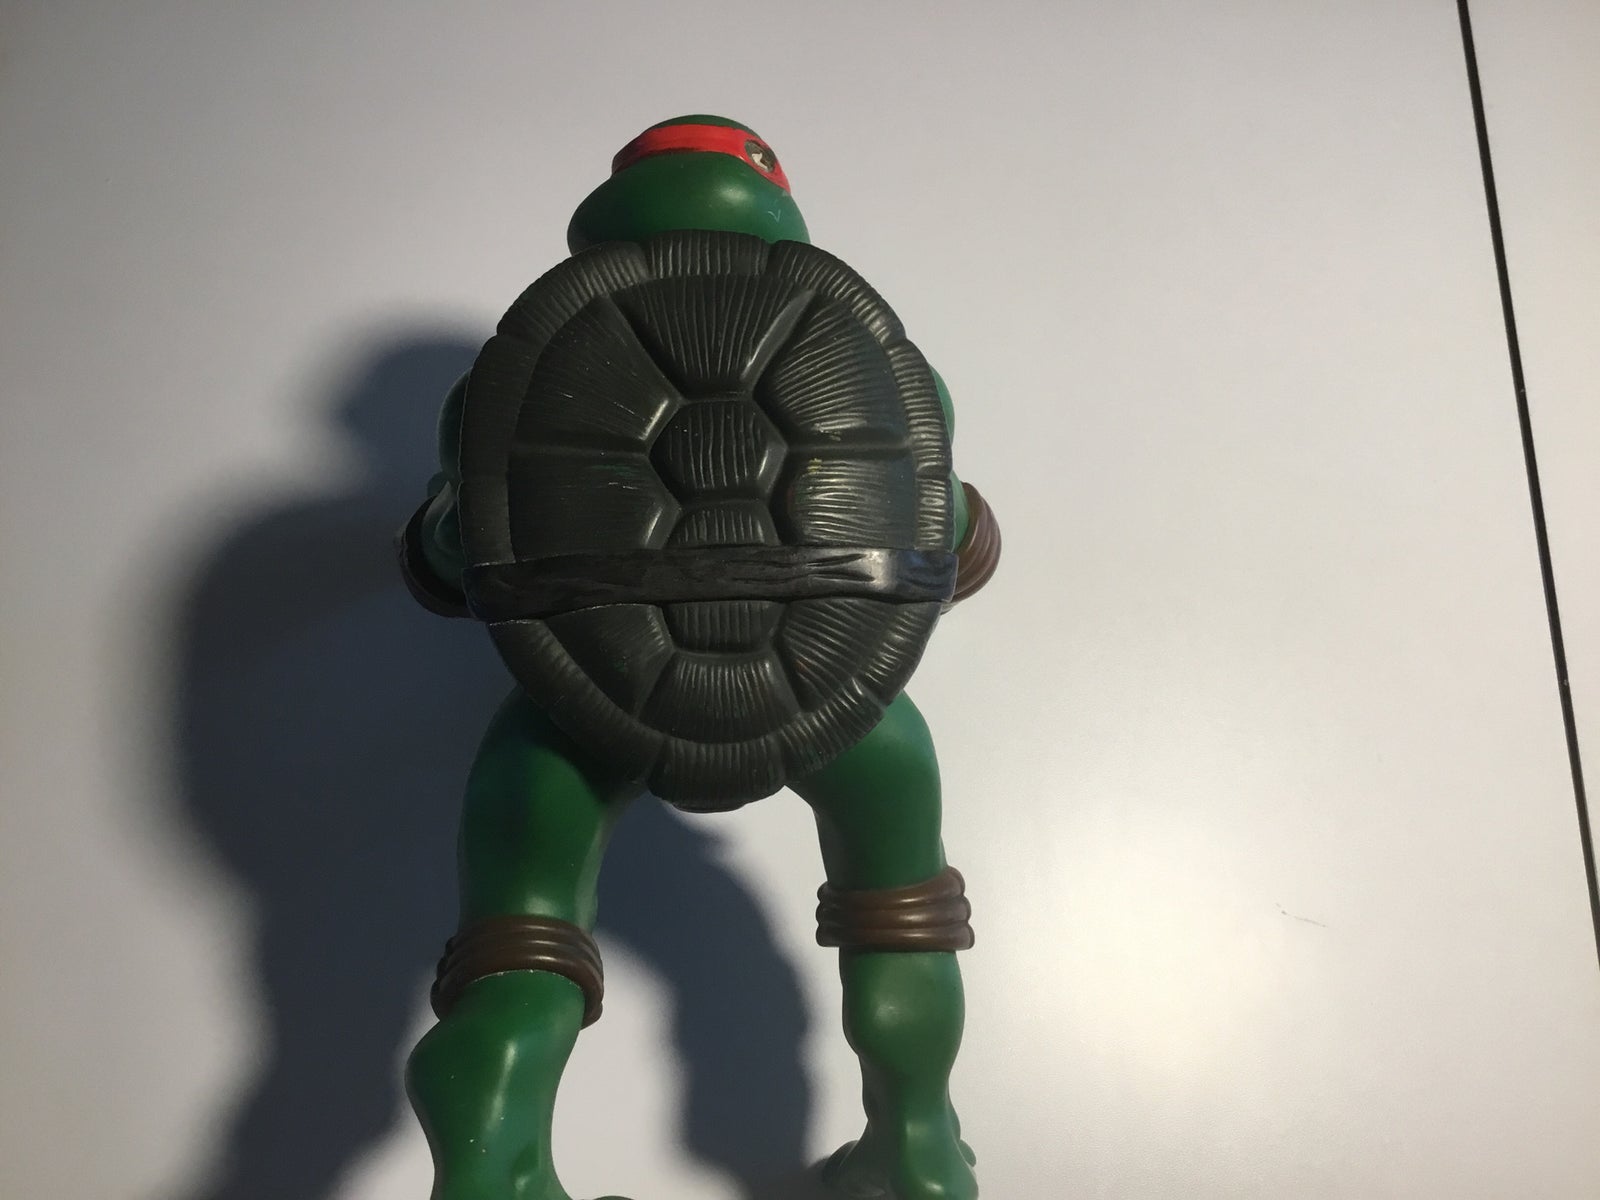 Raphael, Ninja Turtles